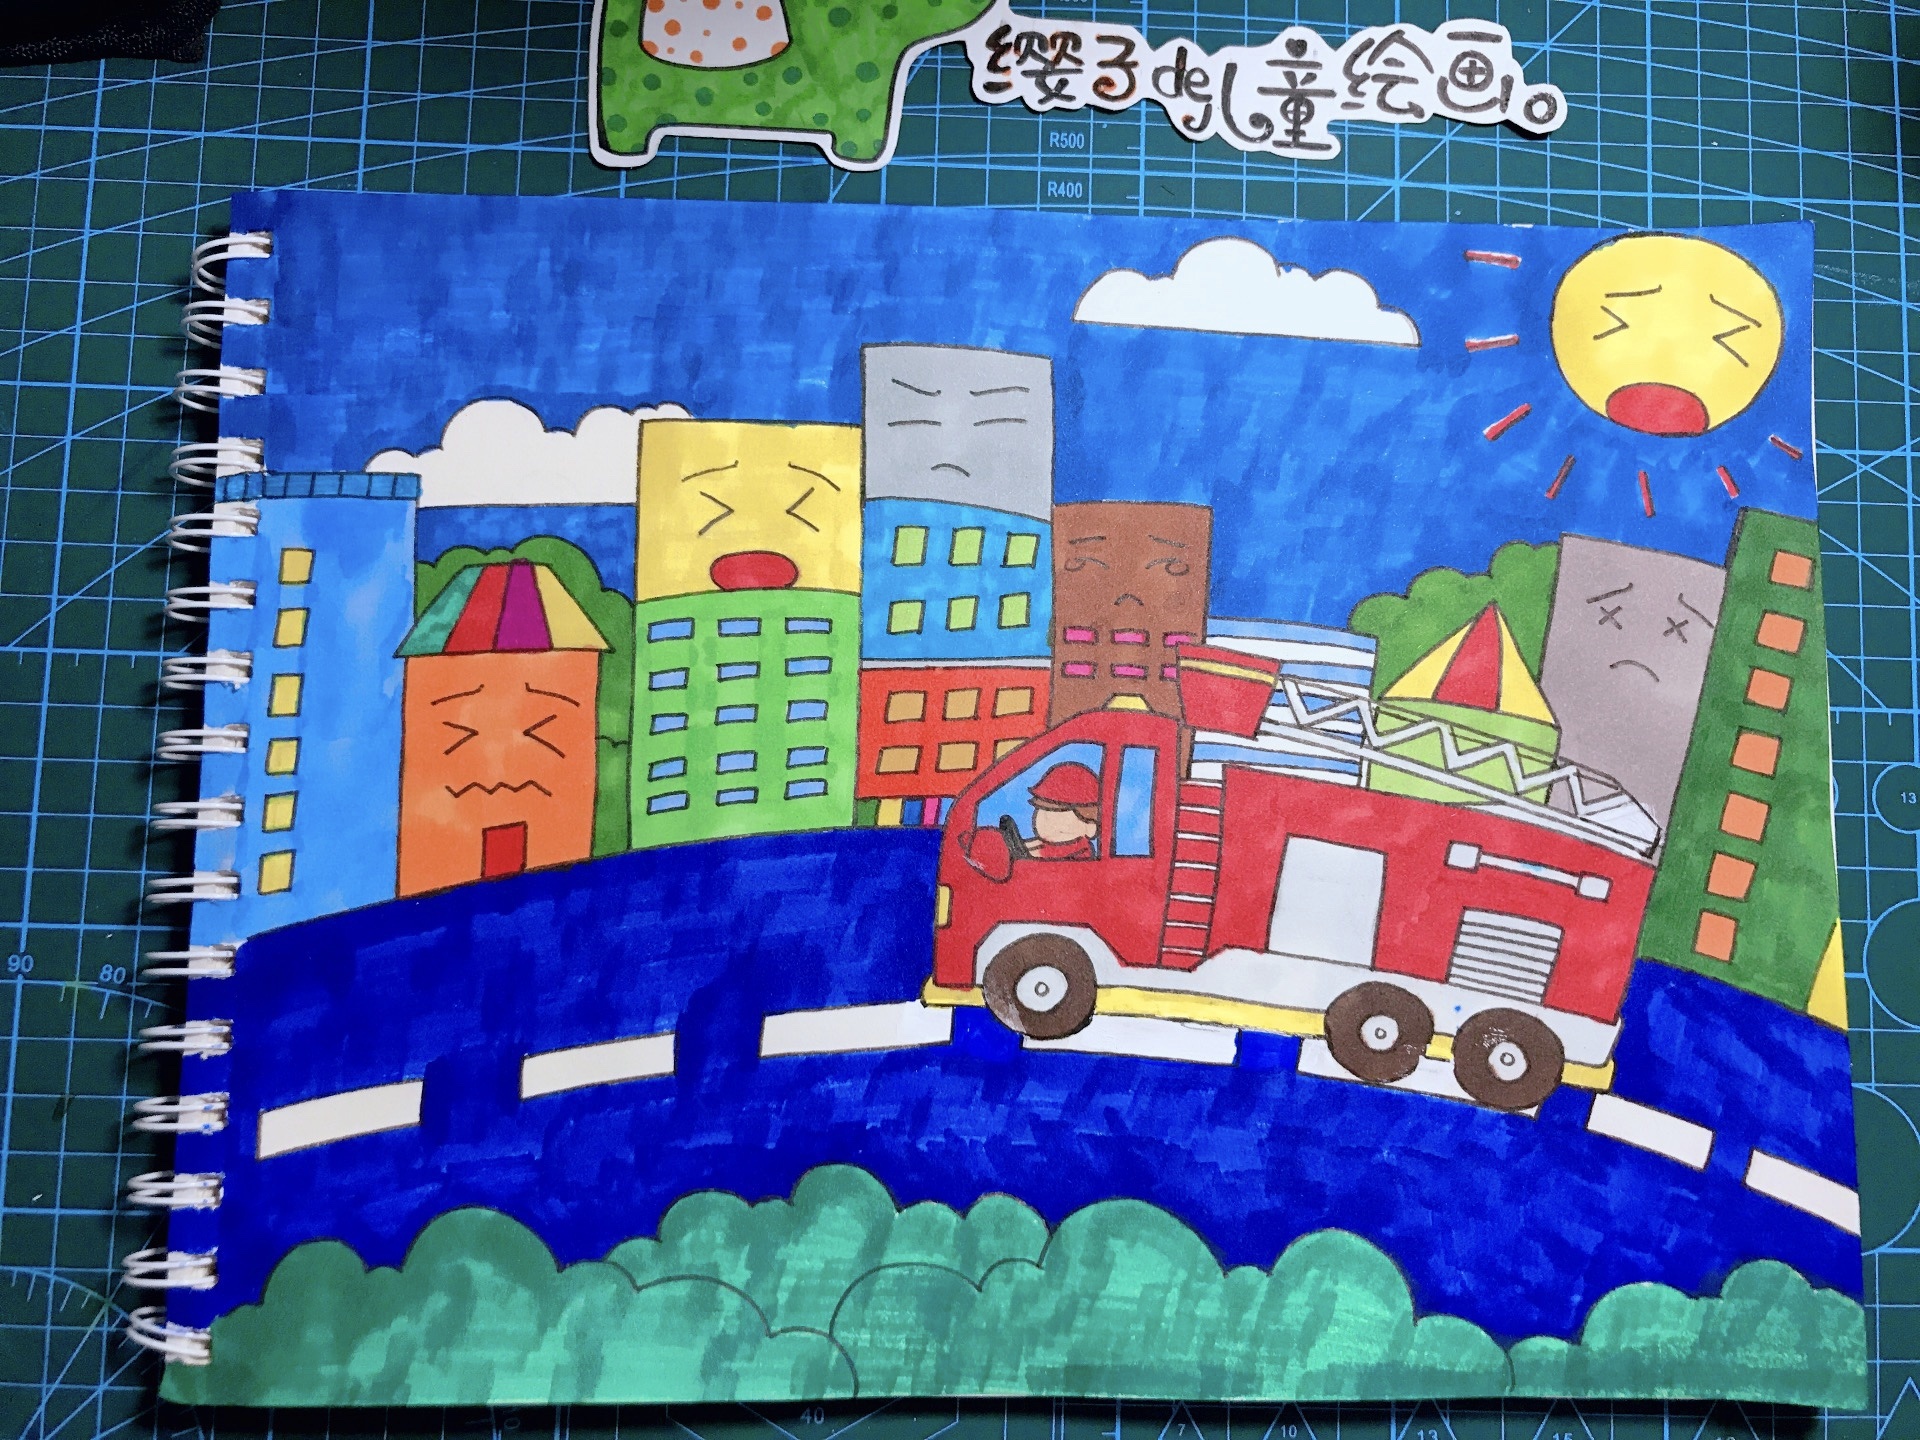 【我是小小消防员】第二届全国儿童消防作文绘画部分作品展示-搜狐